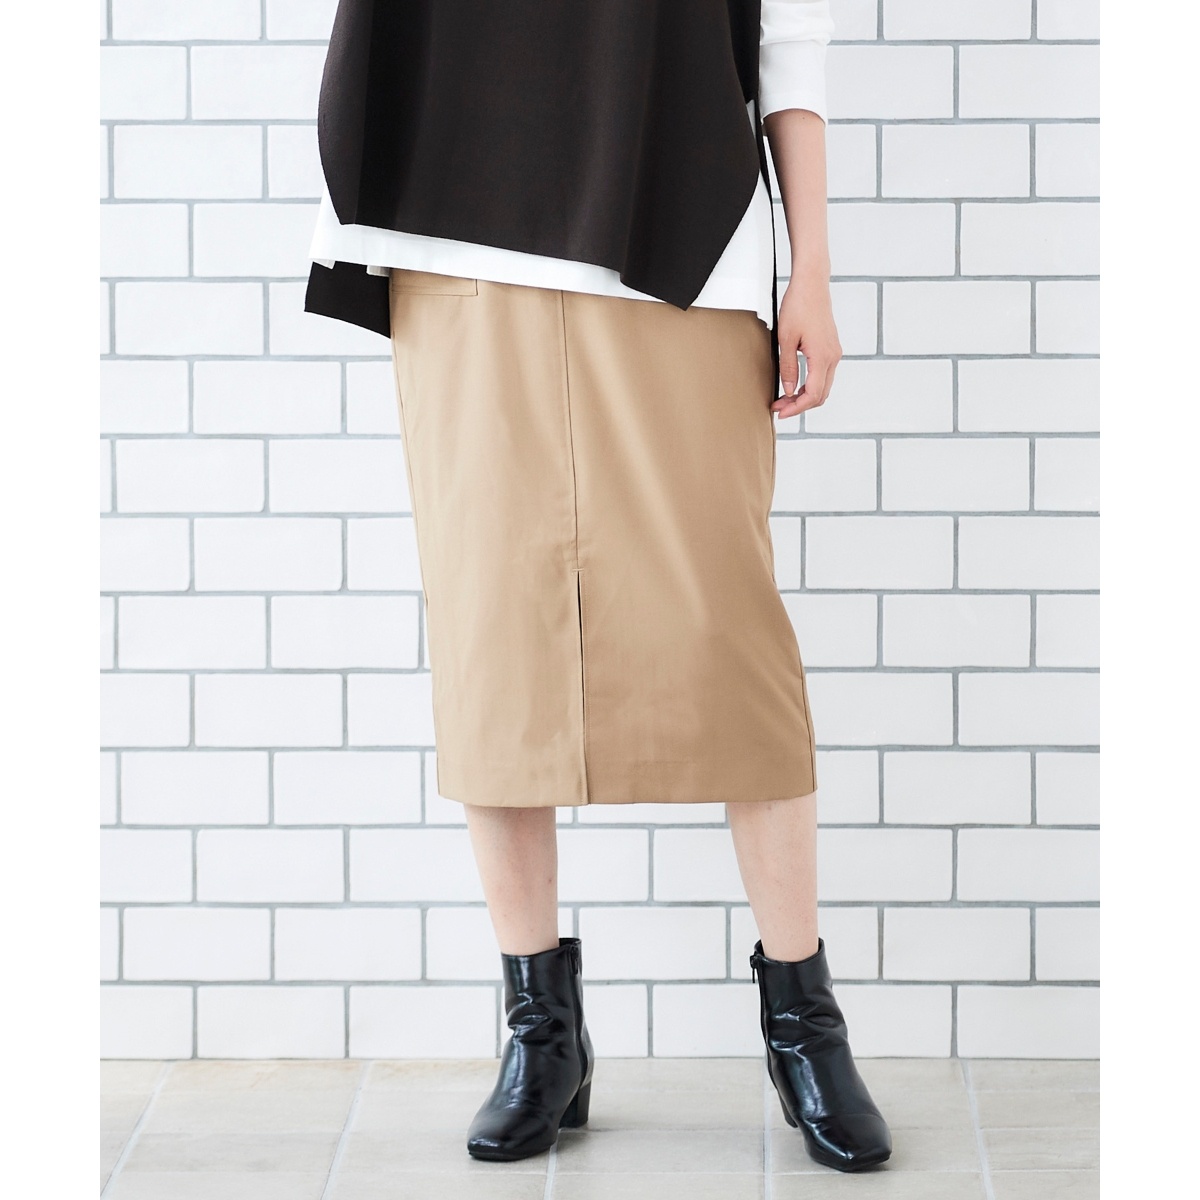 センタースリットタイトスカート | ルクールブラン(le.coeur blanc) | 3007047006 | ファッション通販 マルイウェブチャネル